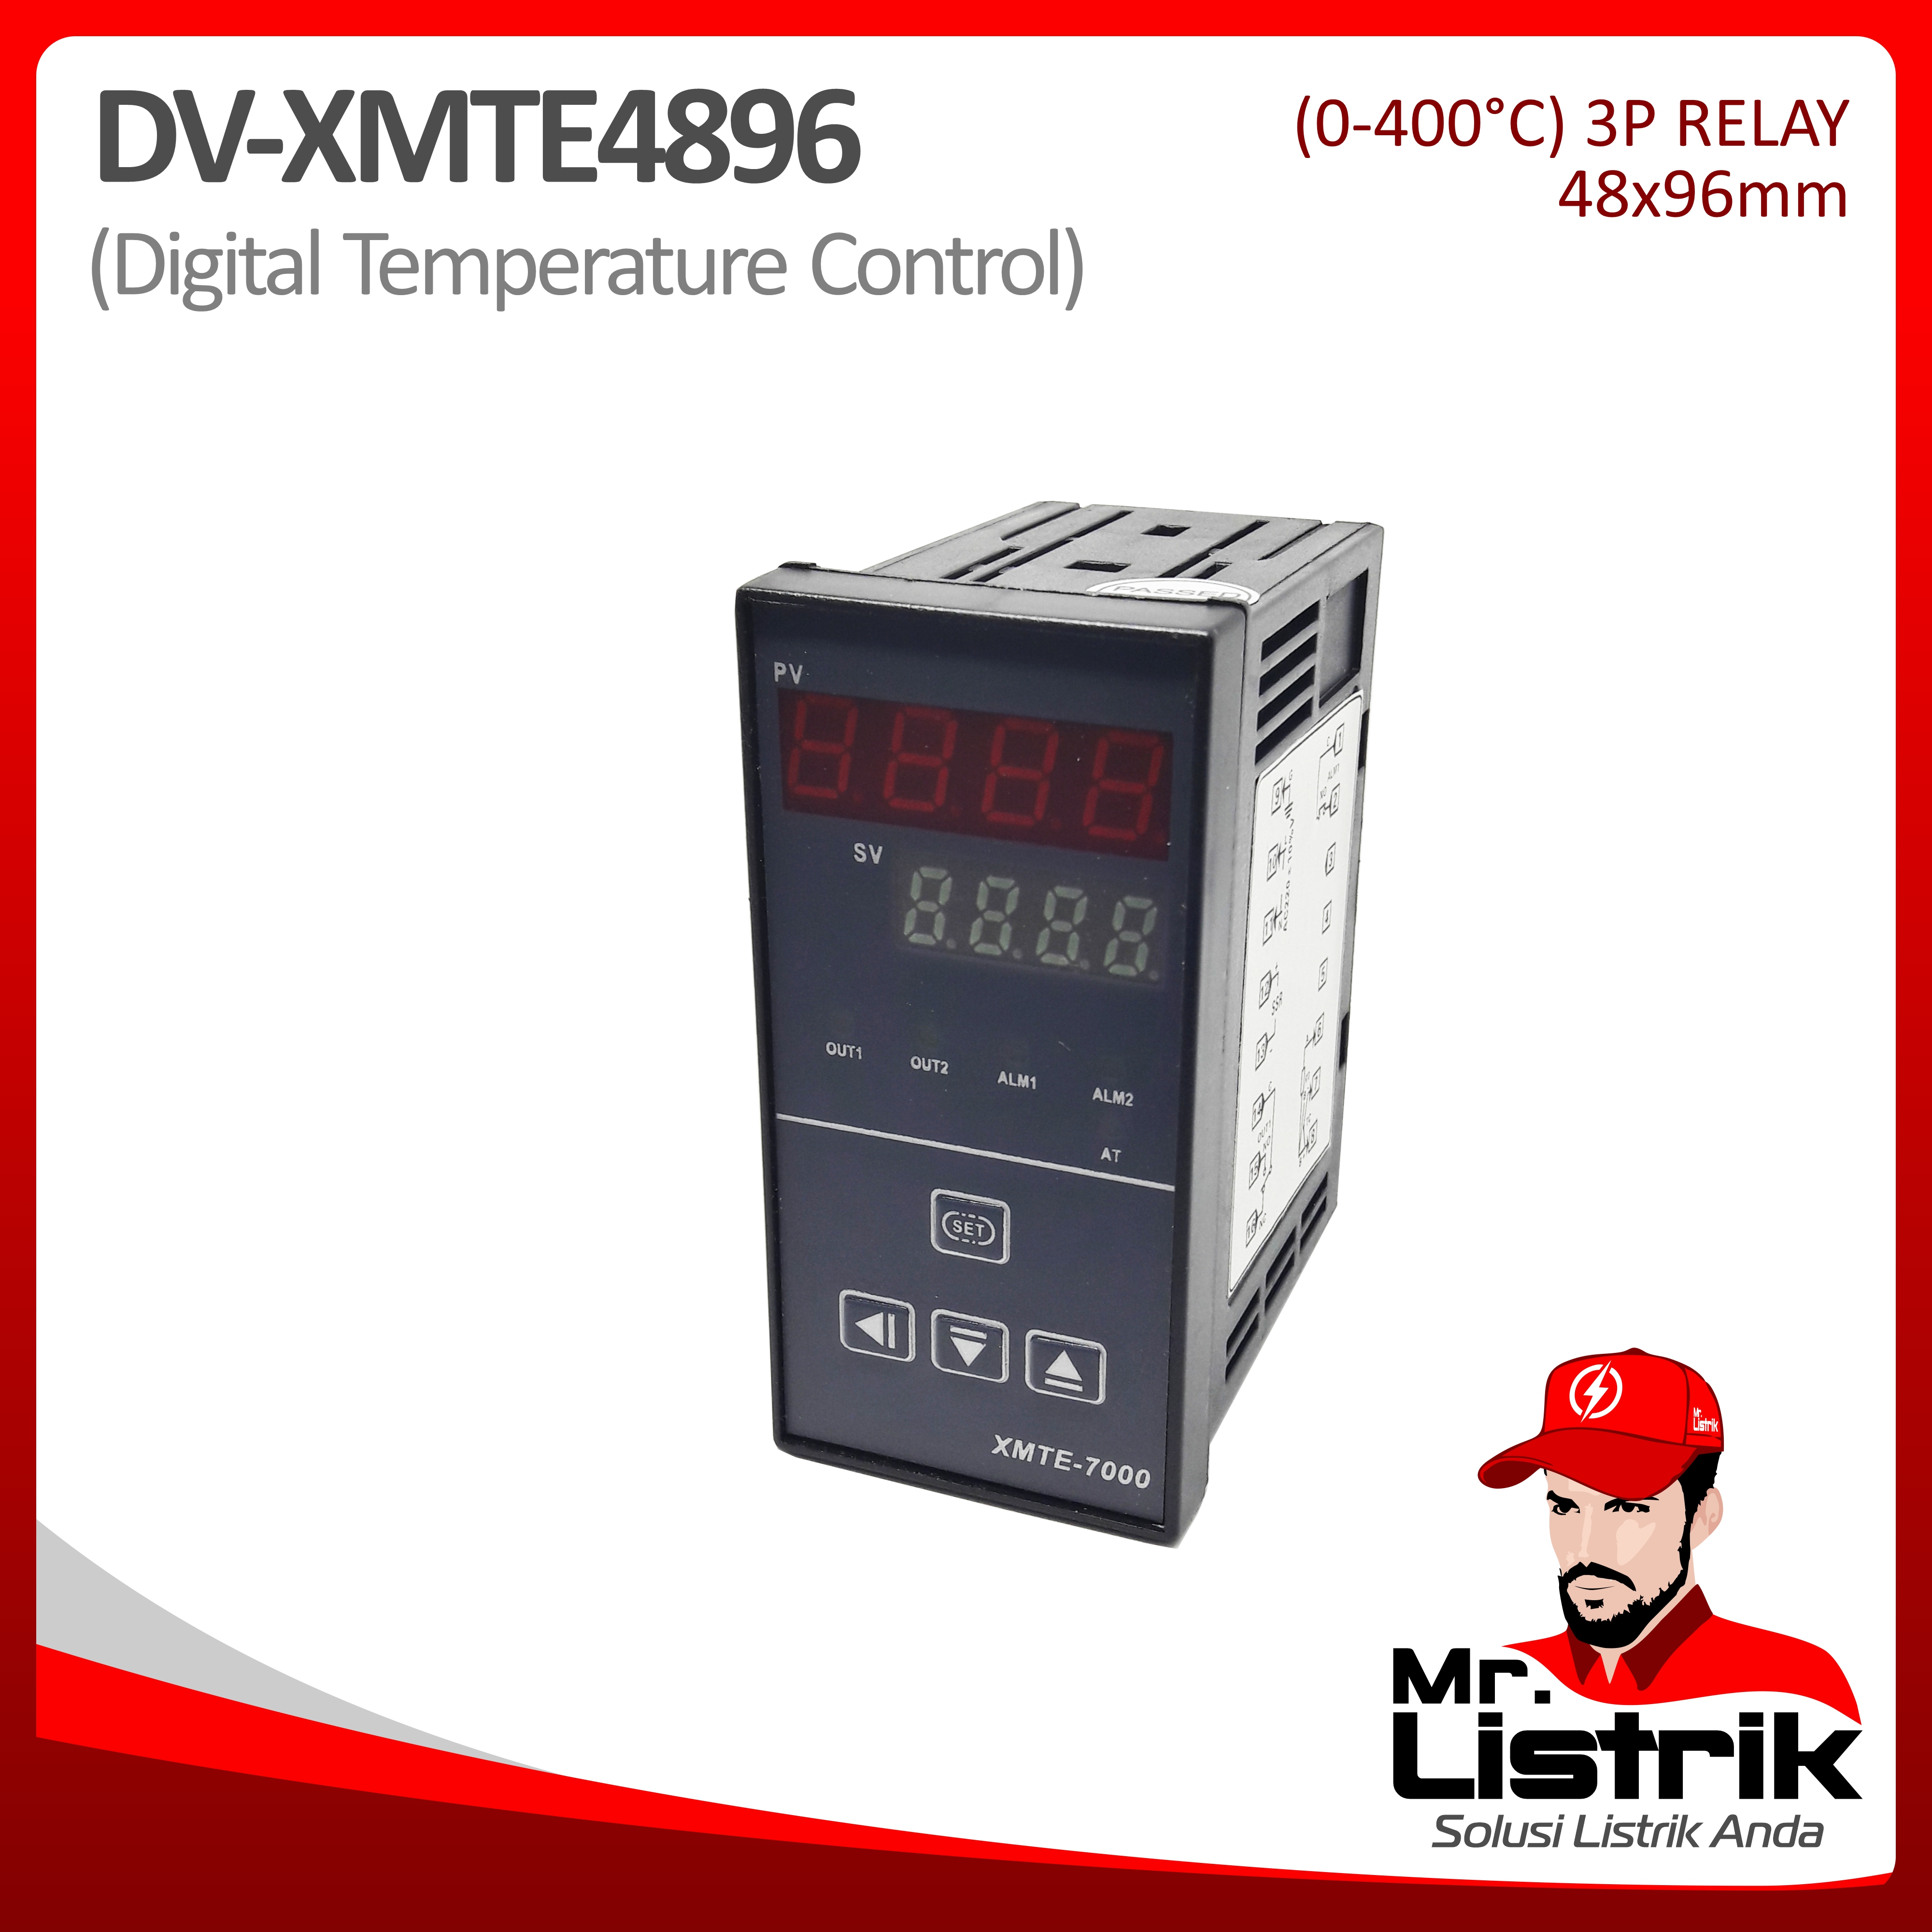 Digital Temperature Control 48x96 DV XMTE4896